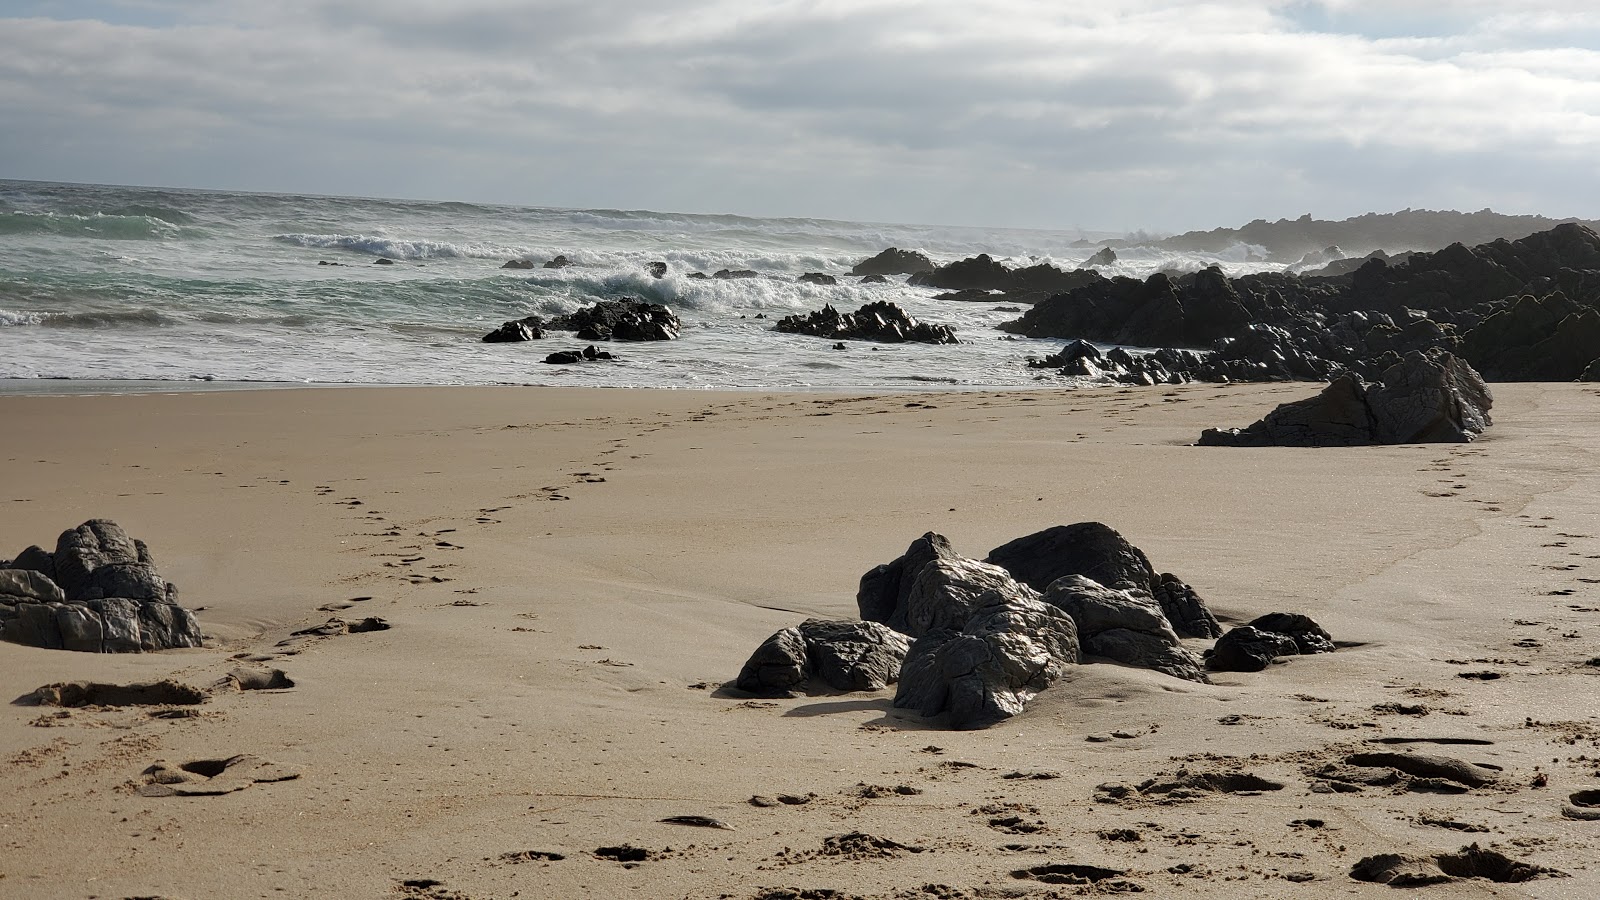 Fotografie cu Wasserna's beach cu o suprafață de nisip fin strălucitor